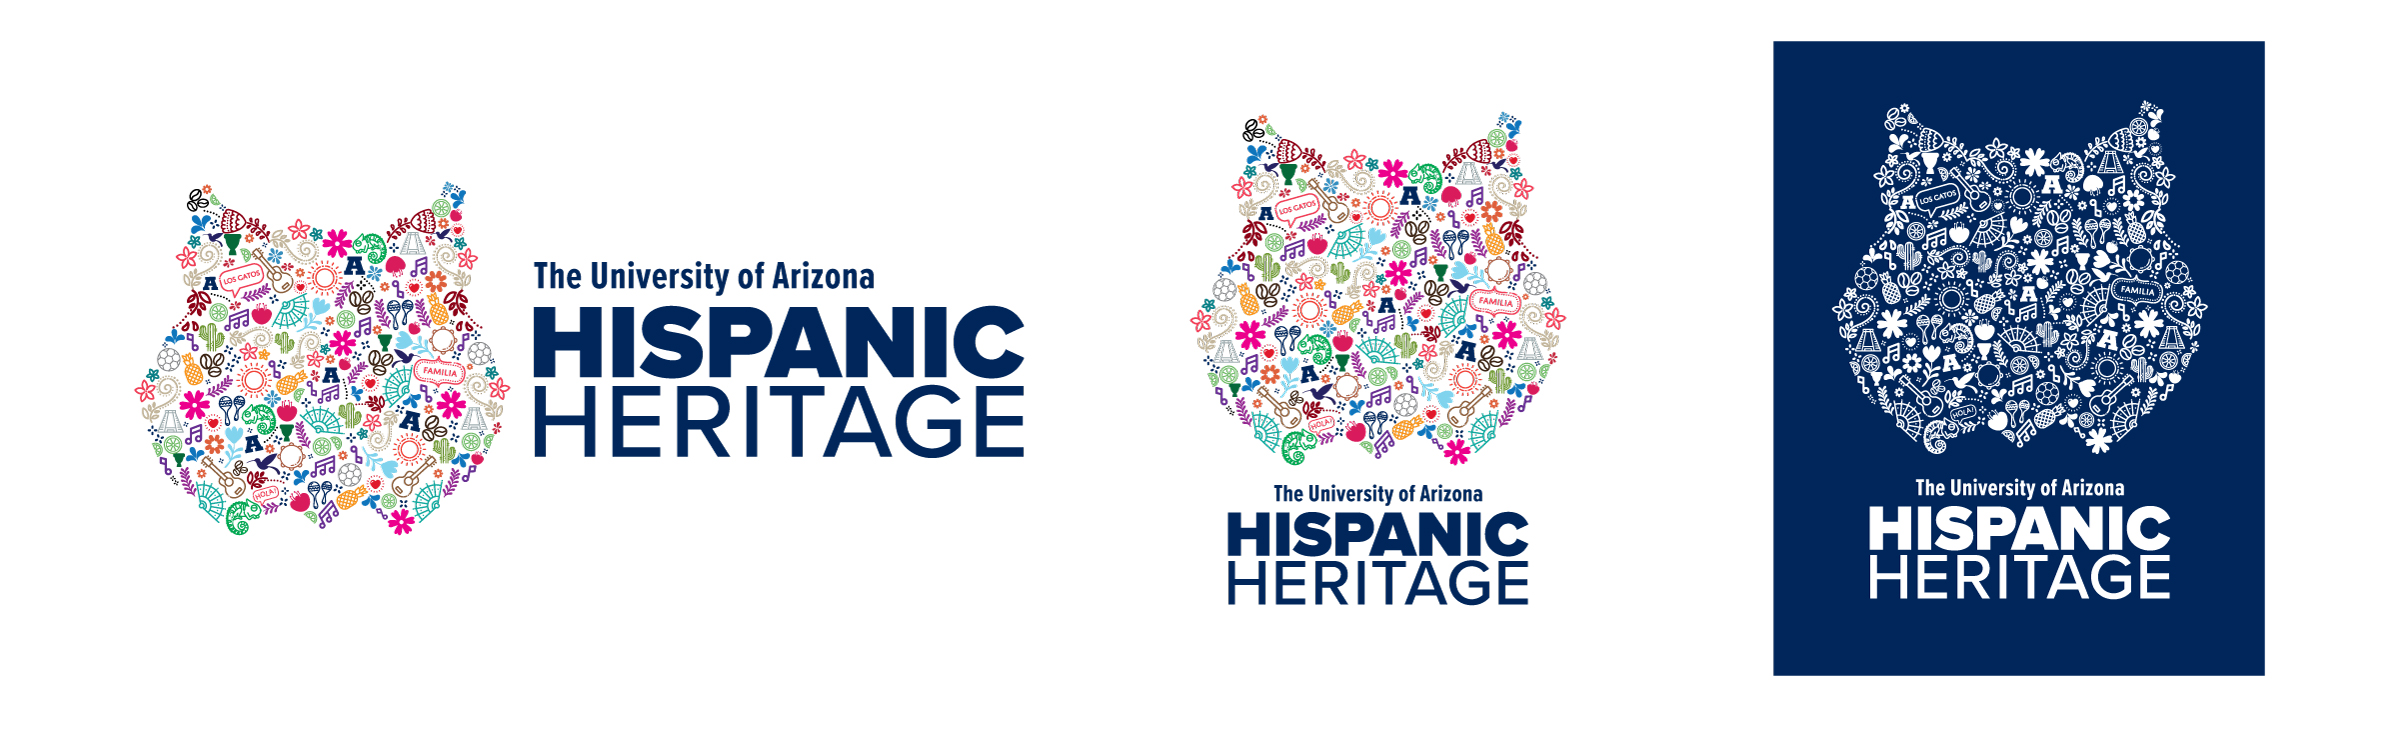 Hispanic Heritage Logos